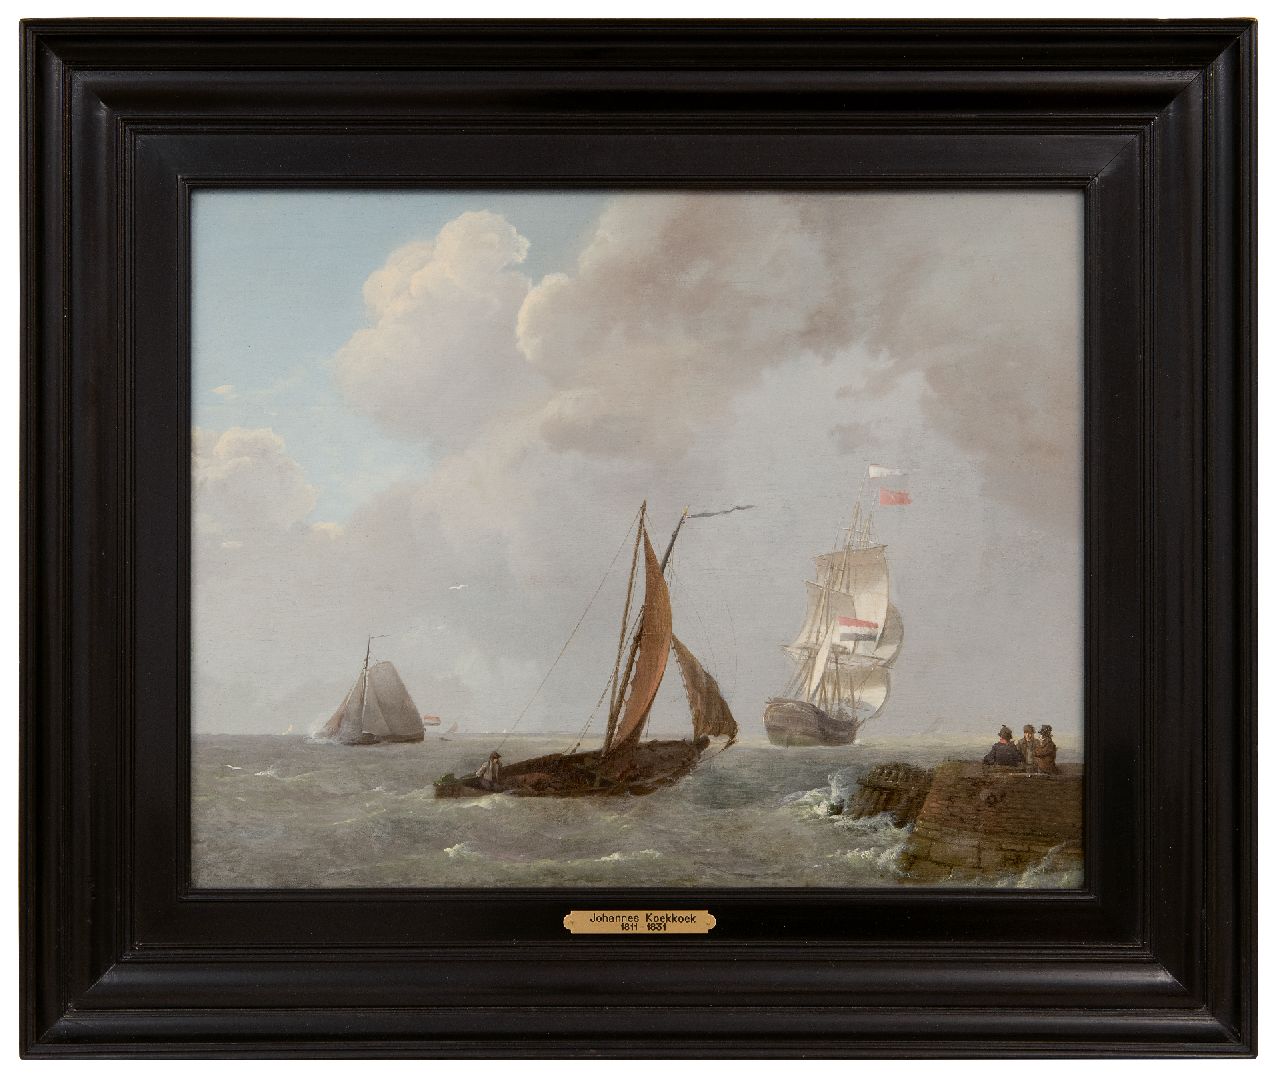 Koekkoek J.  | Johannes Koekkoek, Laverende zeilschepen in de Zeeuwse wateren, olieverf op paneel 30,0 x 38,9 cm, gesigneerd rechtsonder en gedateerd 1829